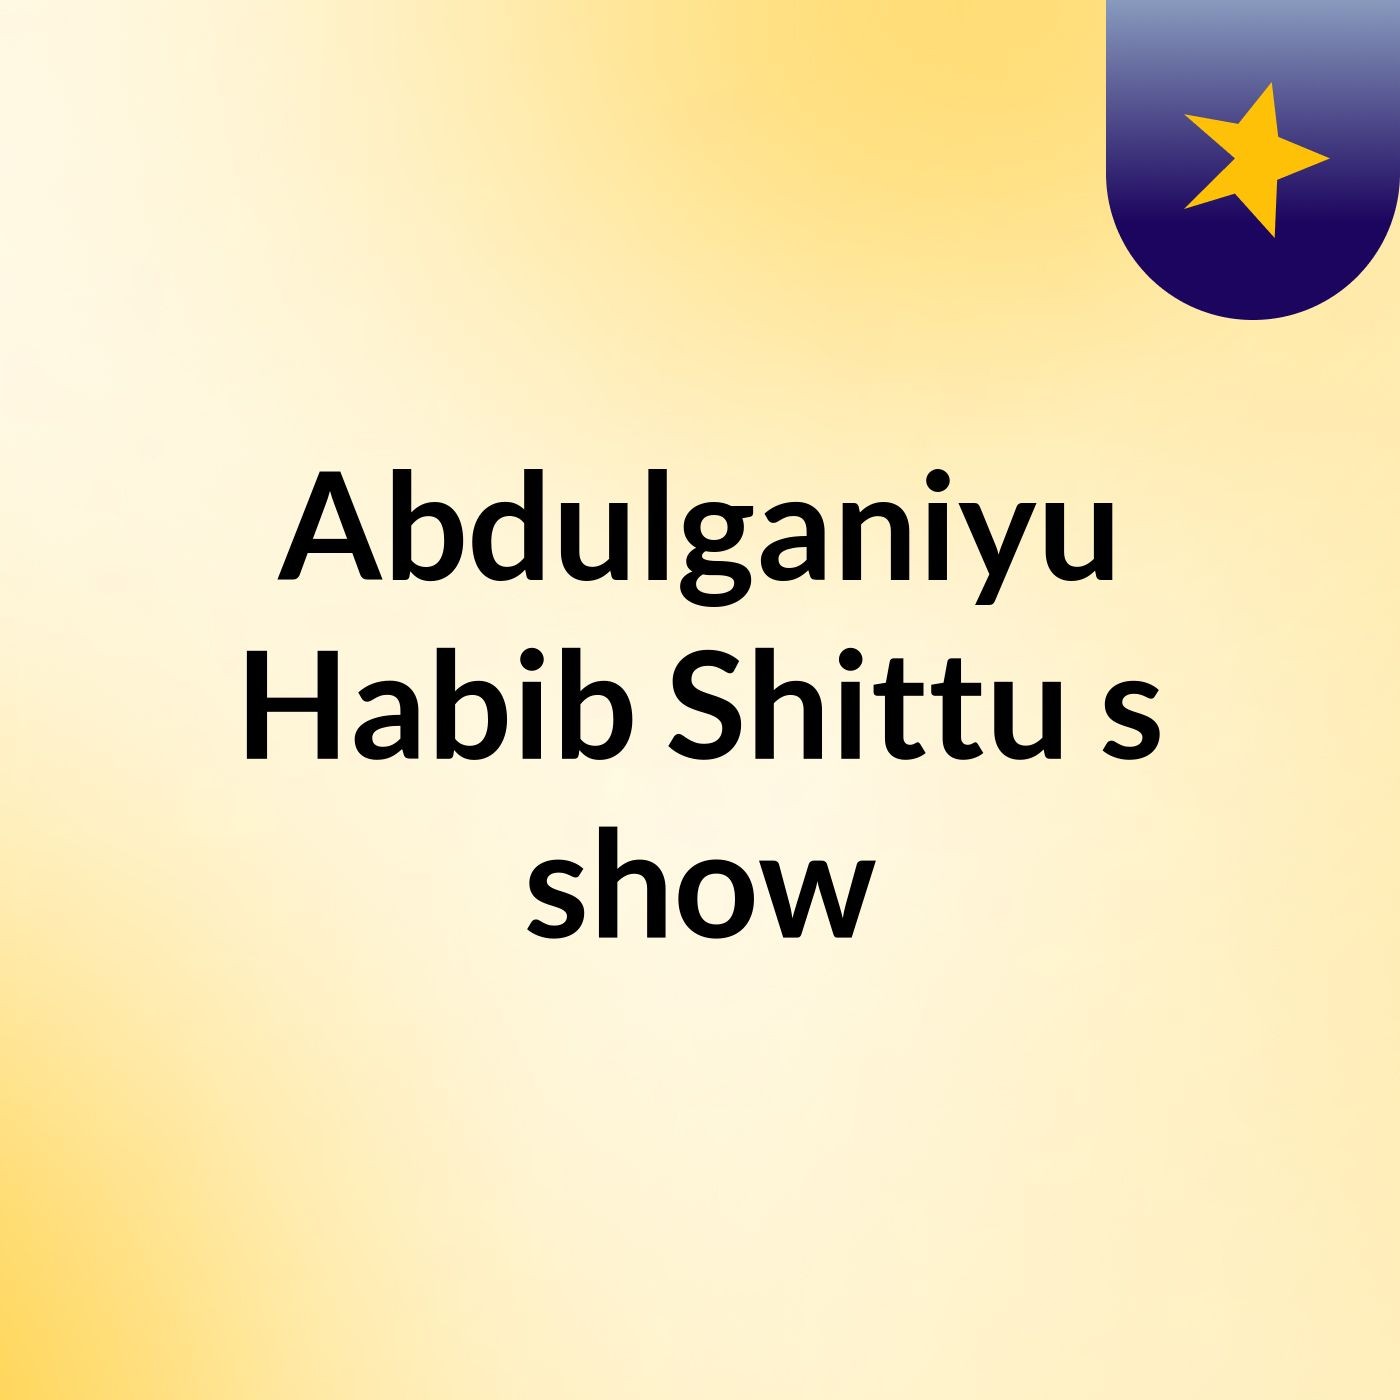 Abdulganiyu Habib Shittu's show